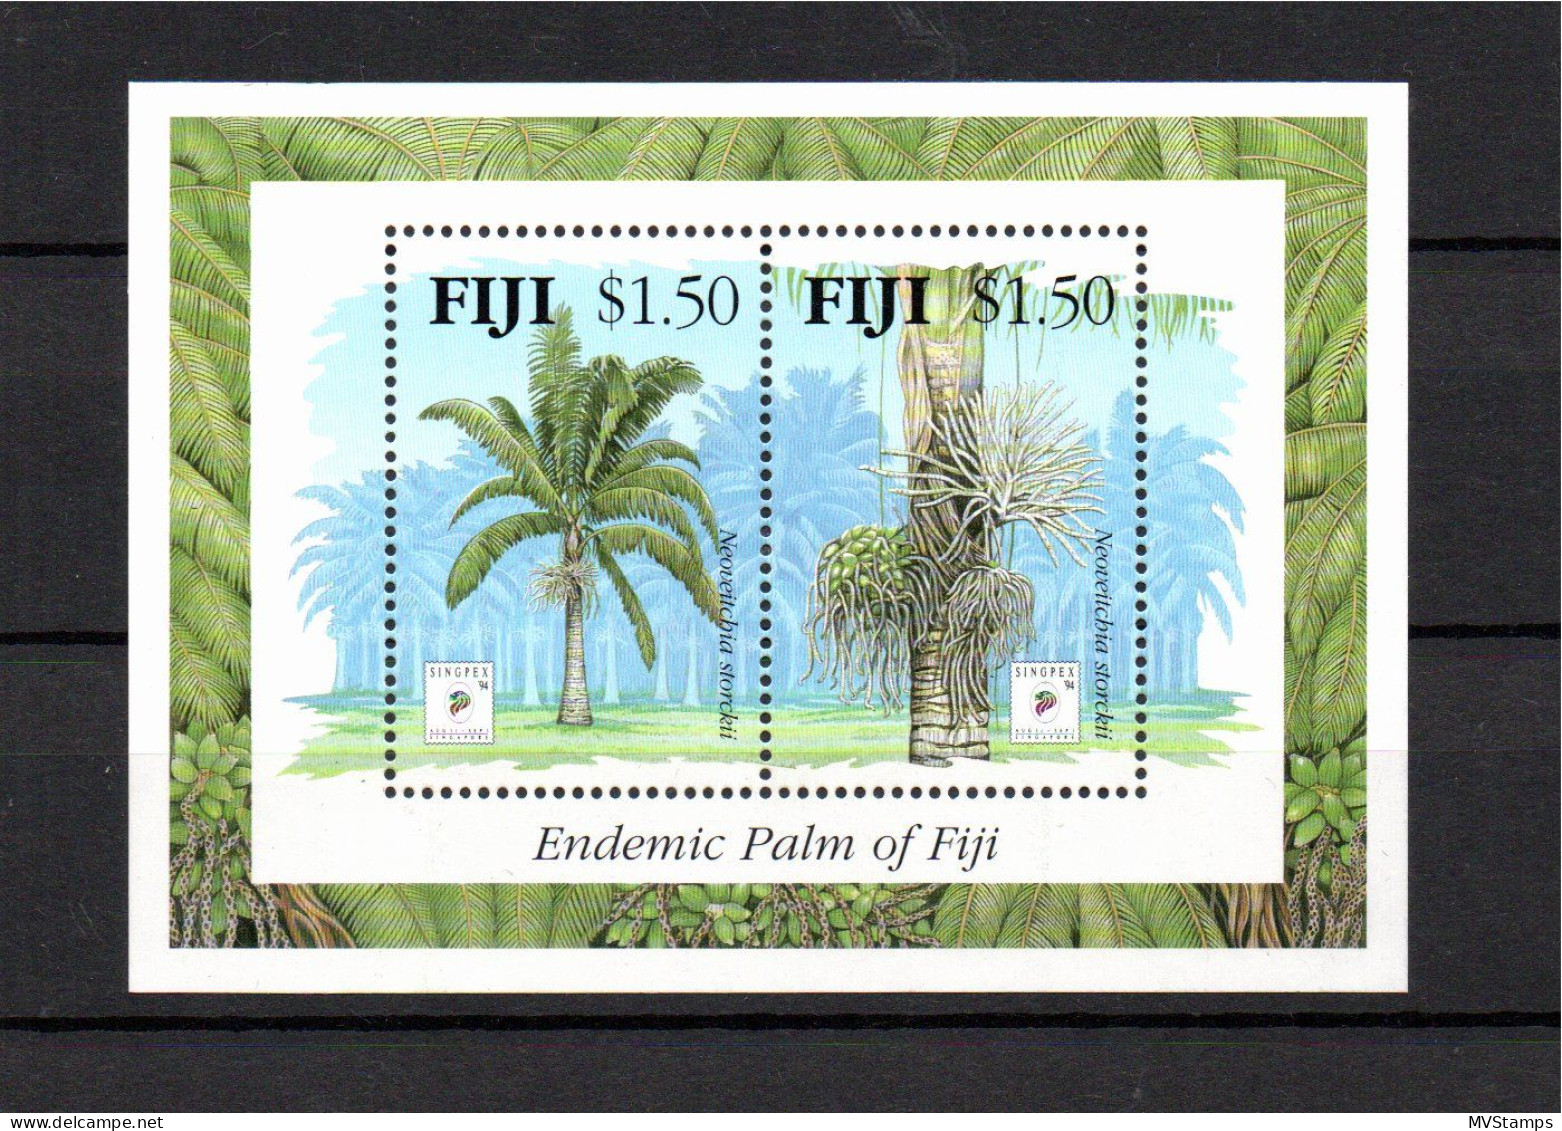 Fiji 1994 Sheet Flowers/Trees Stamps (Michel Block 13) MNH - Fidji (1970-...)